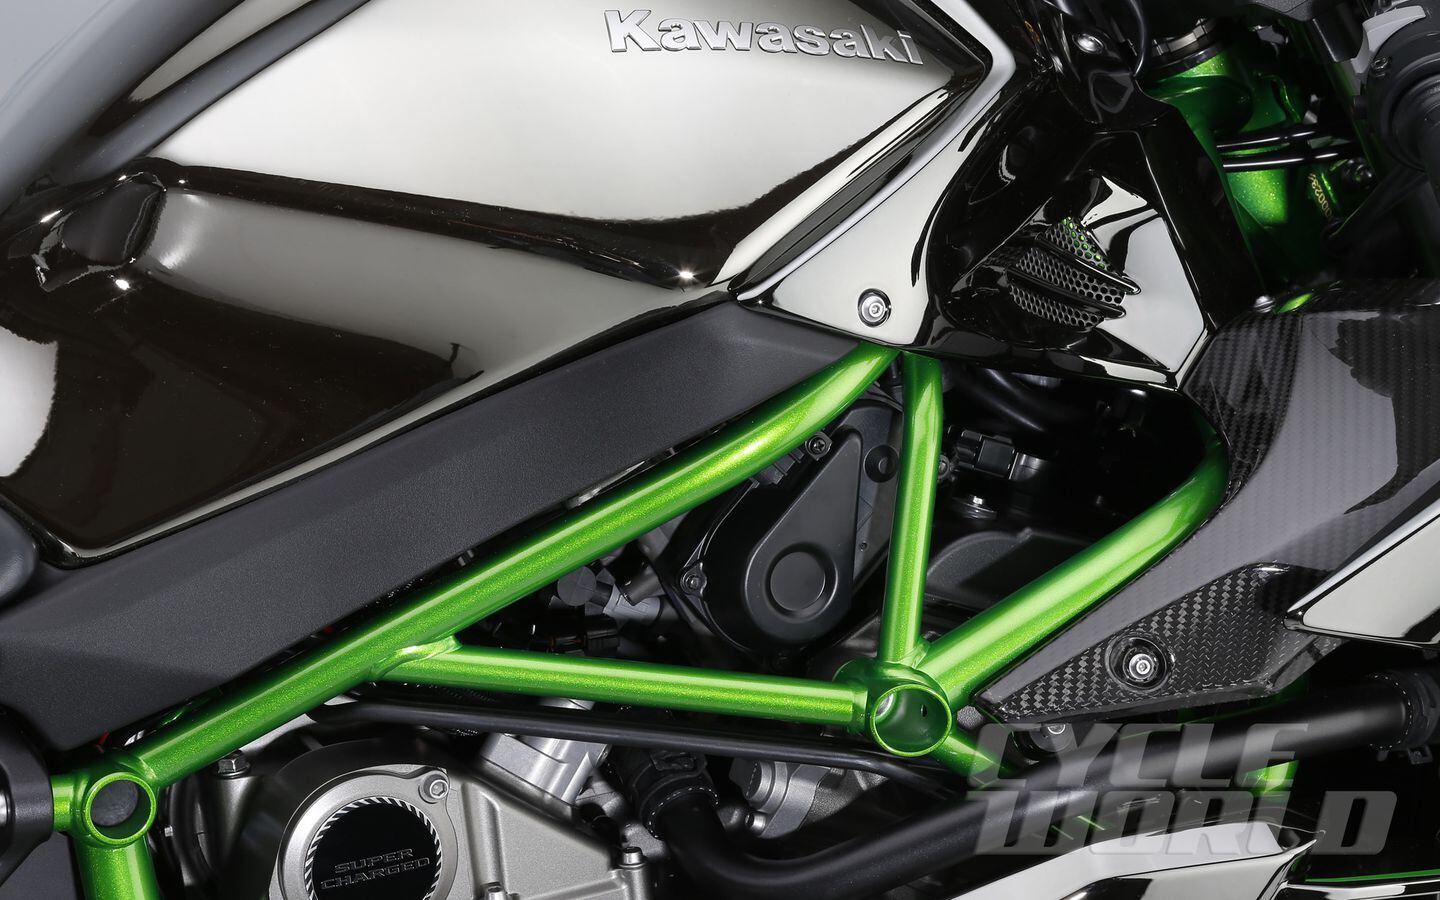 2015 Kawasaki Ninja H2R Unveiled At Intermot 2014 Motorcycle Show | Cycle  World